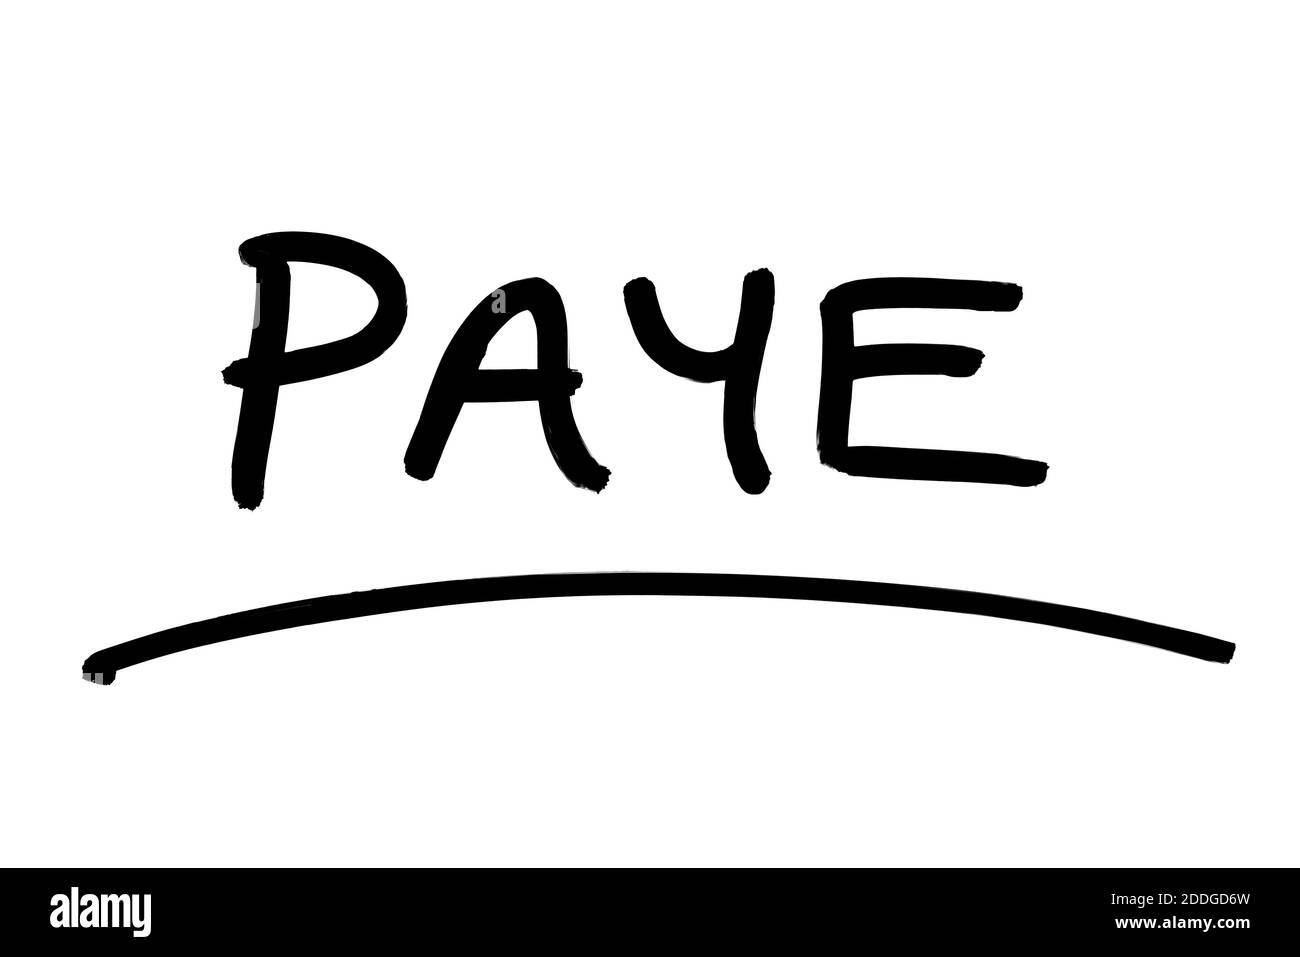 PAYE - l'abréviation de Pay as You Earn, manuscrite sur fond blanc. Banque D'Images